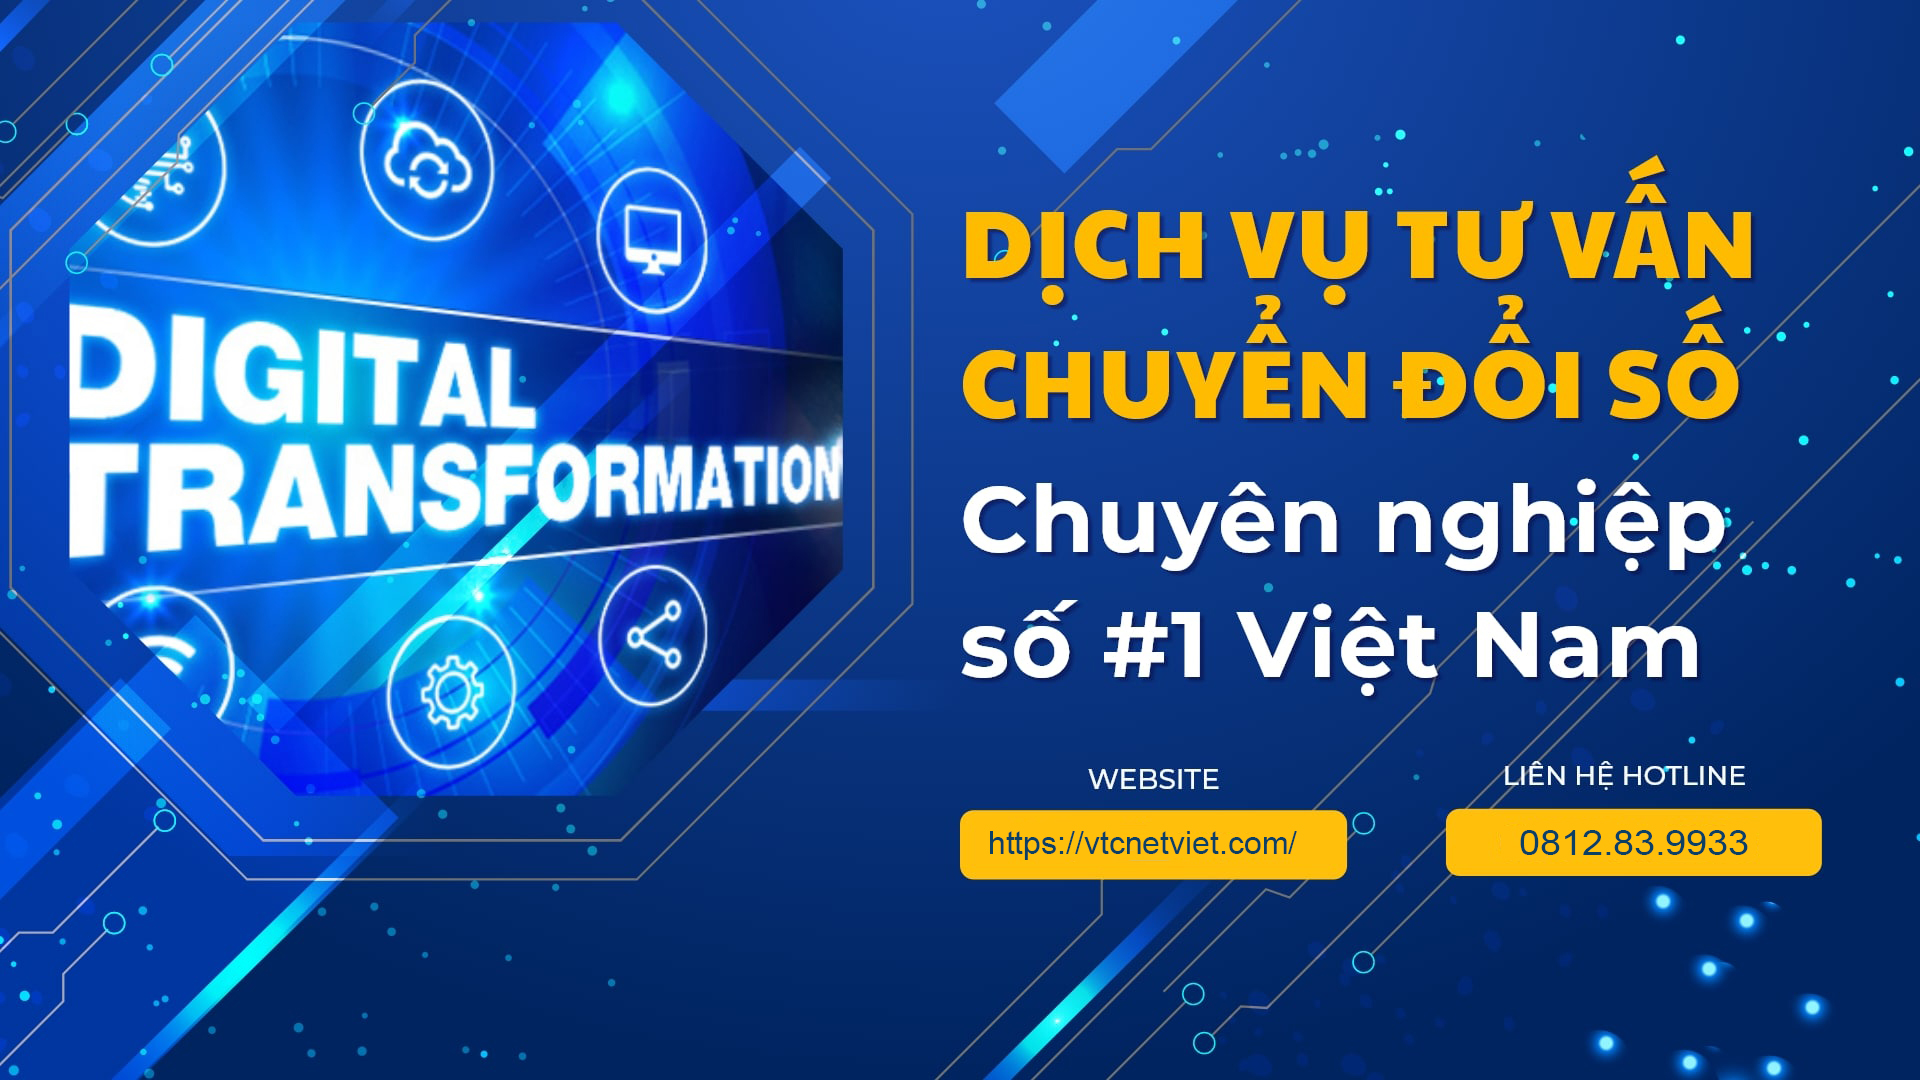 Dịch vụ tư vấn chuyển đổi số chuyên nghiệp số #1 Việt Nam